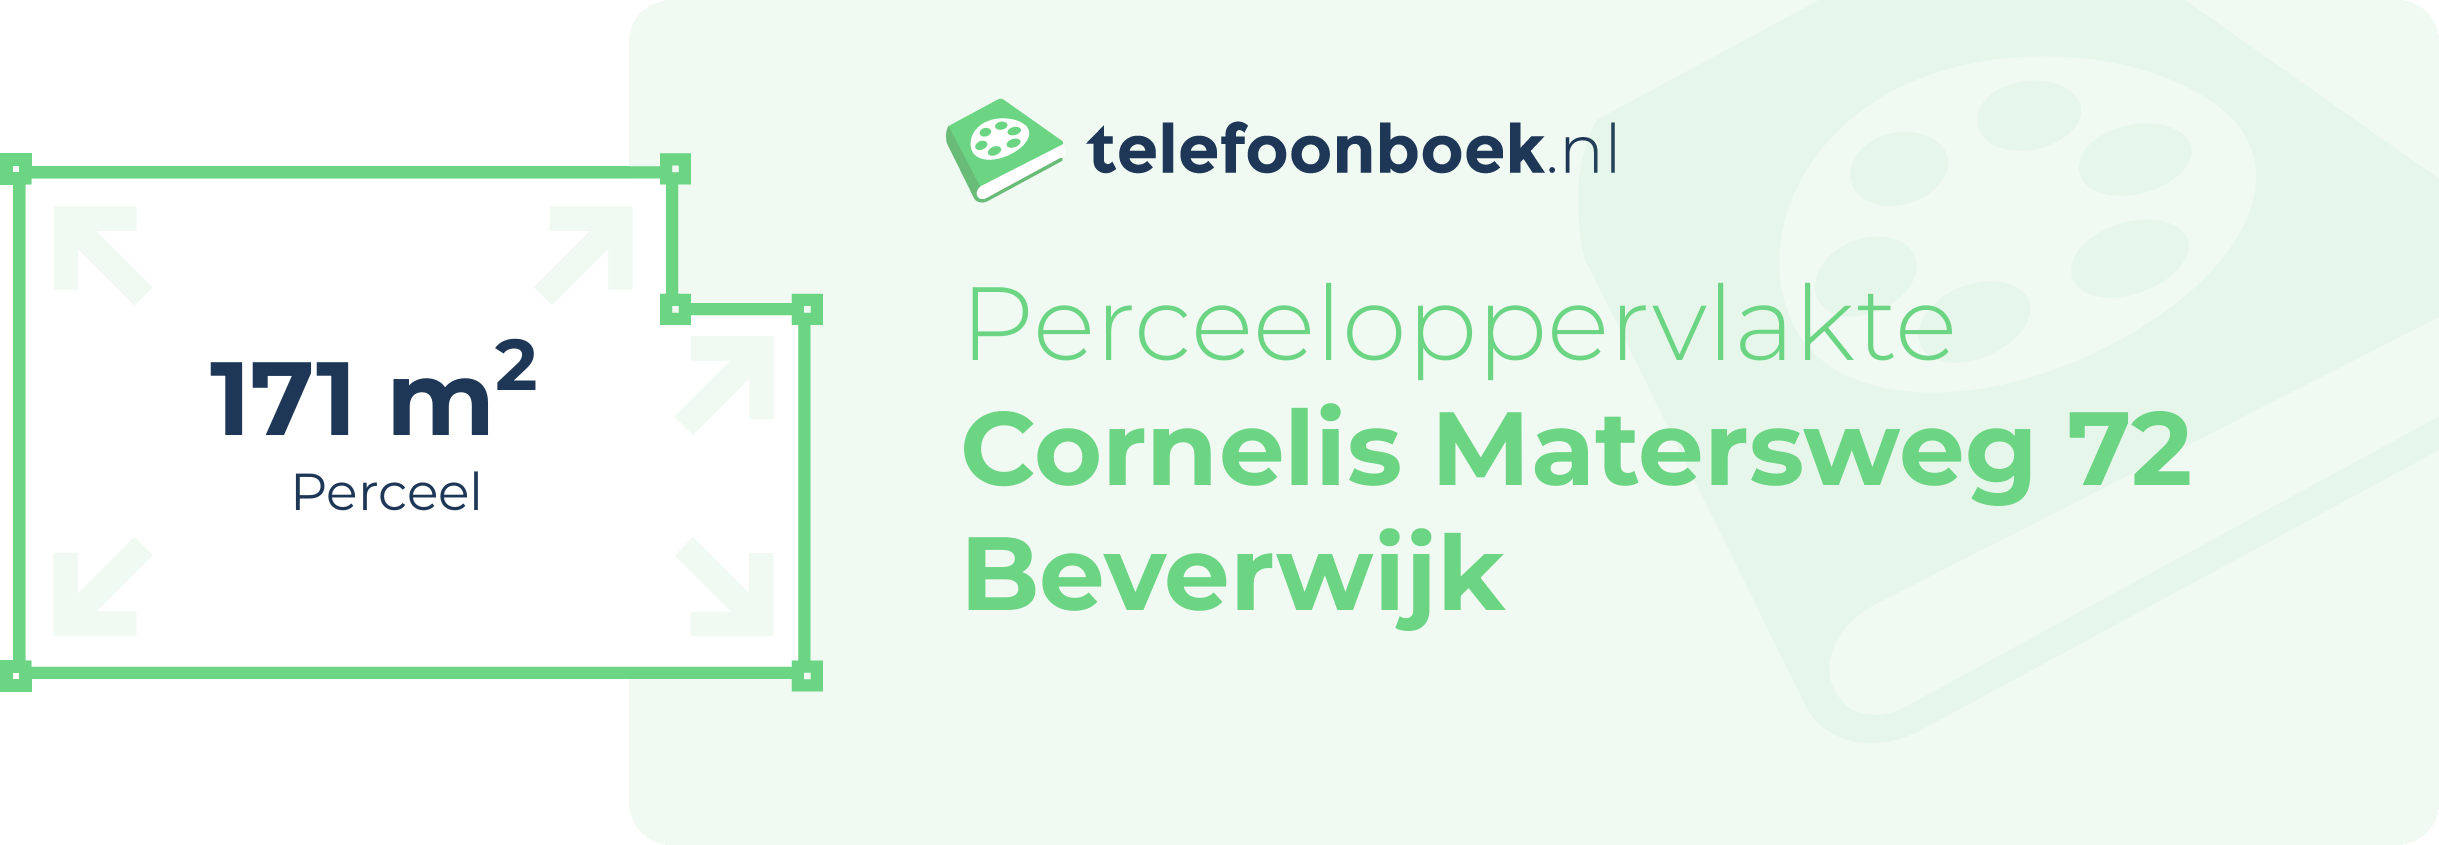 Perceeloppervlakte Cornelis Matersweg 72 Beverwijk